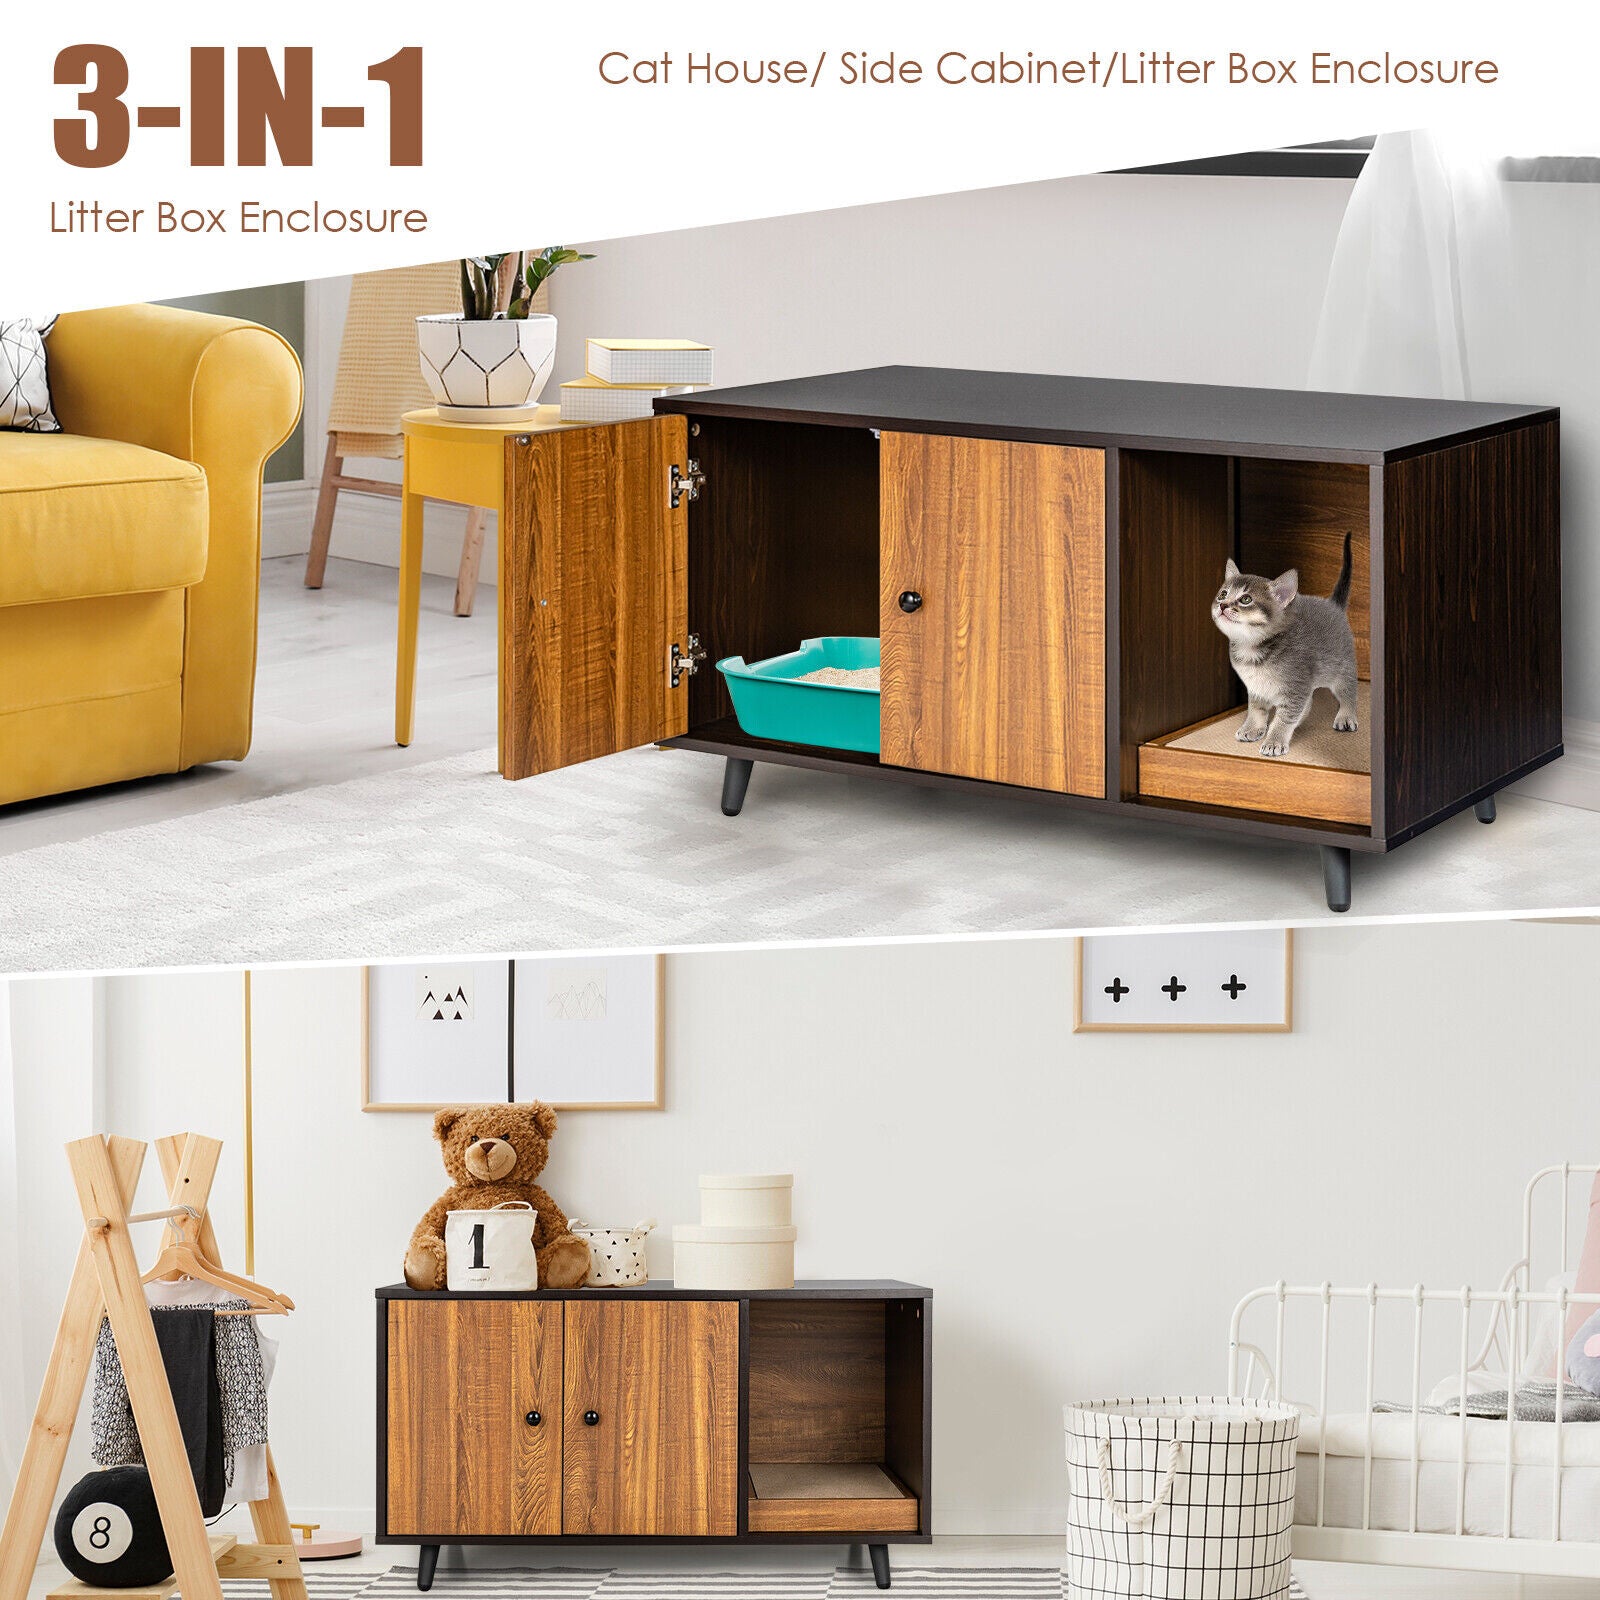 Cat Litter Box Enclosure Pet House Cabinet Hidden Cat Washroom